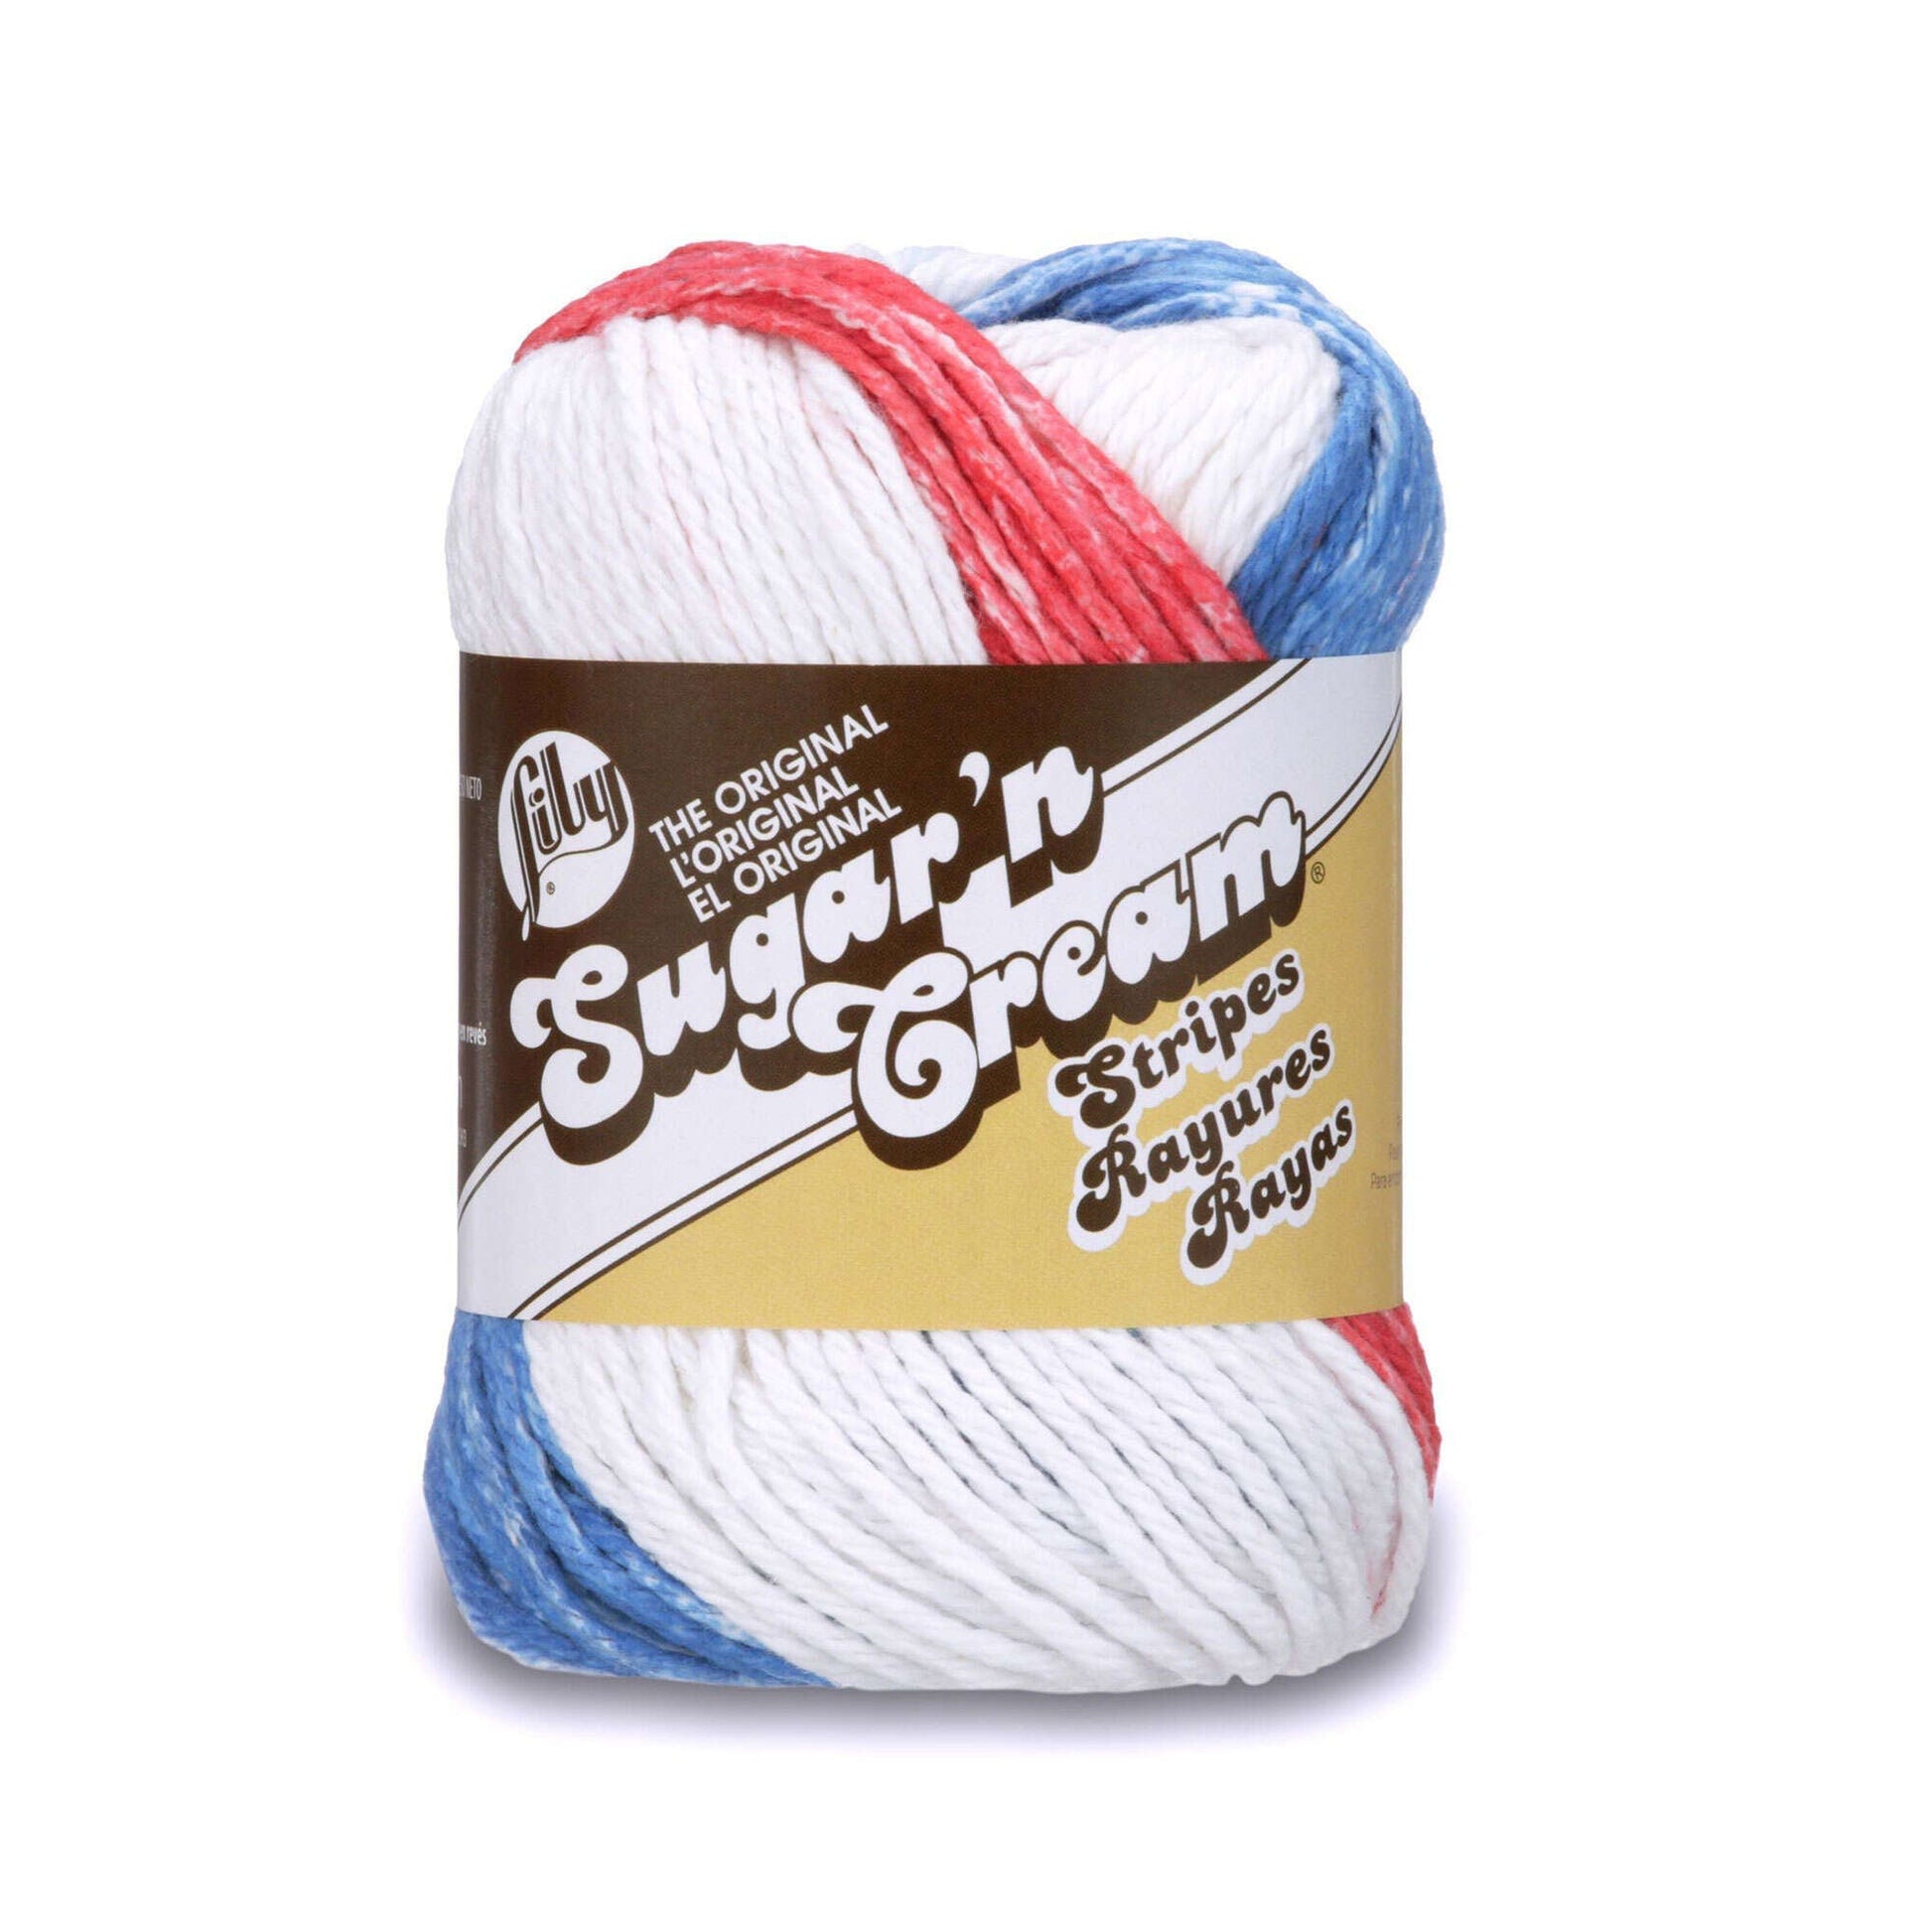 Lily Sugar'n Cream Stripes Yarn Lily Sugar'n Cream Stripes Yarn